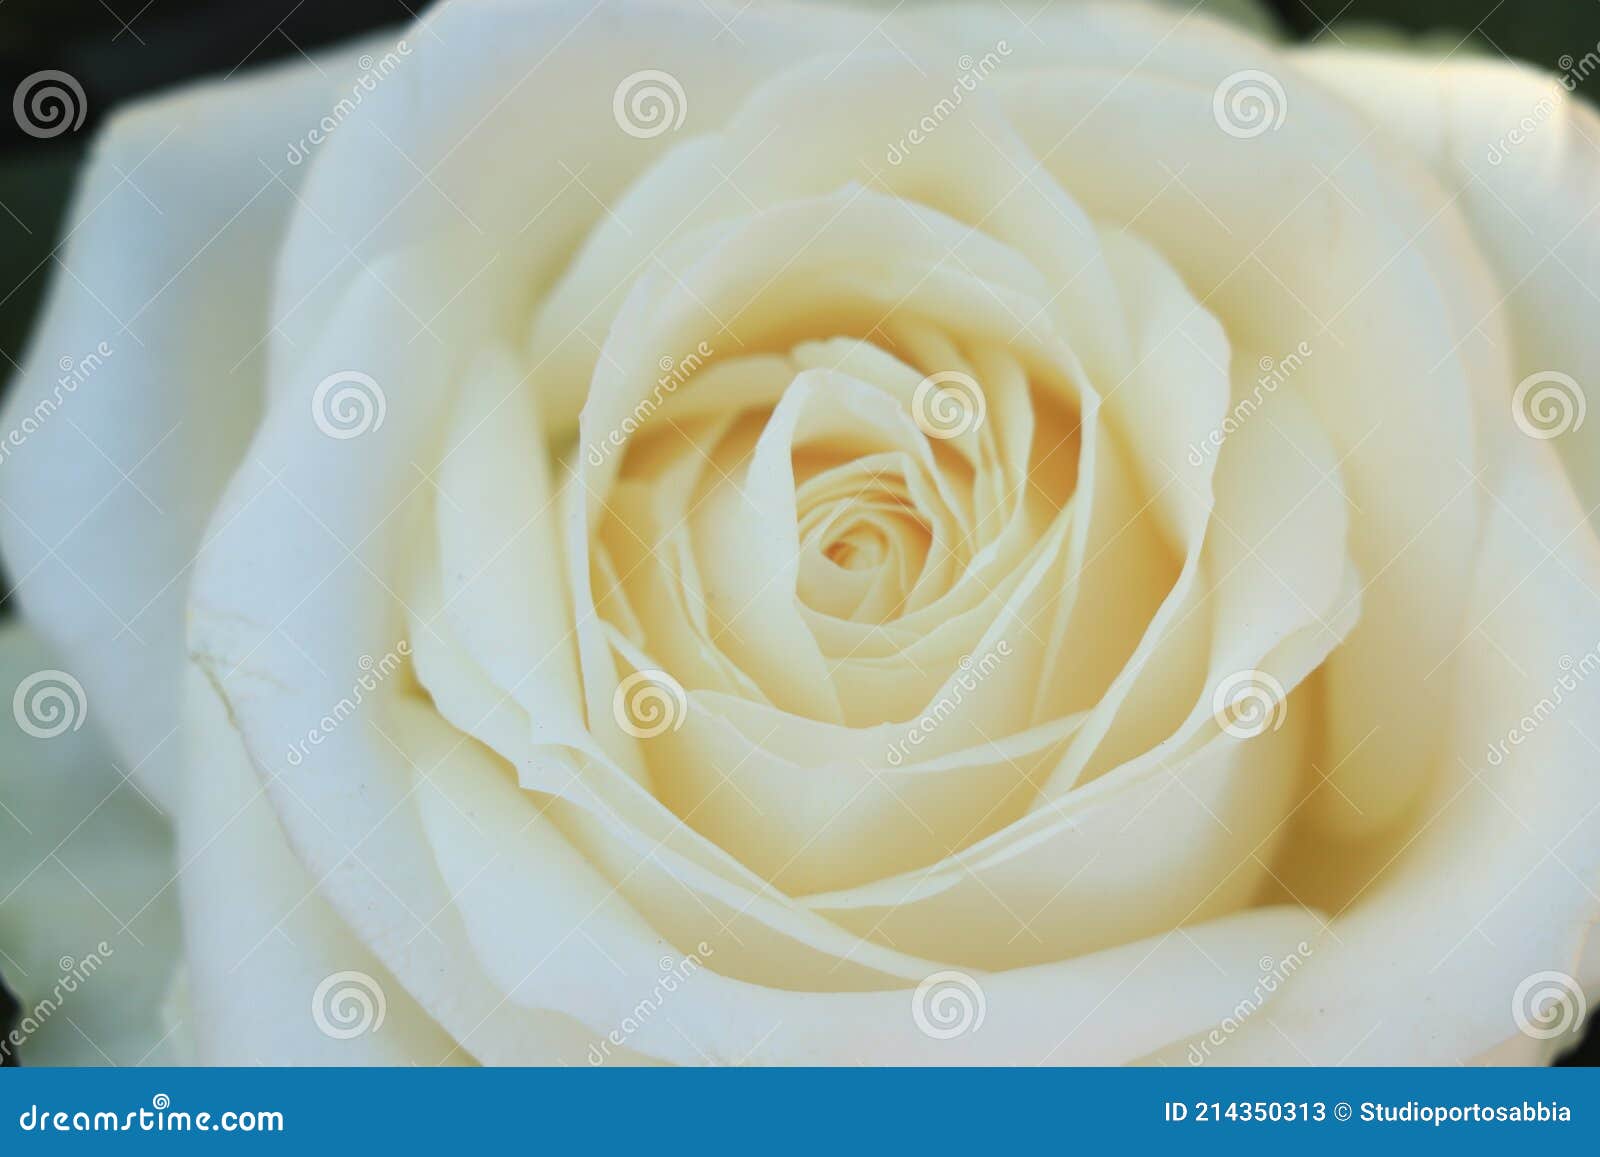 Rosa blanca simple imagen de archivo. Imagen de concepto - 214350313